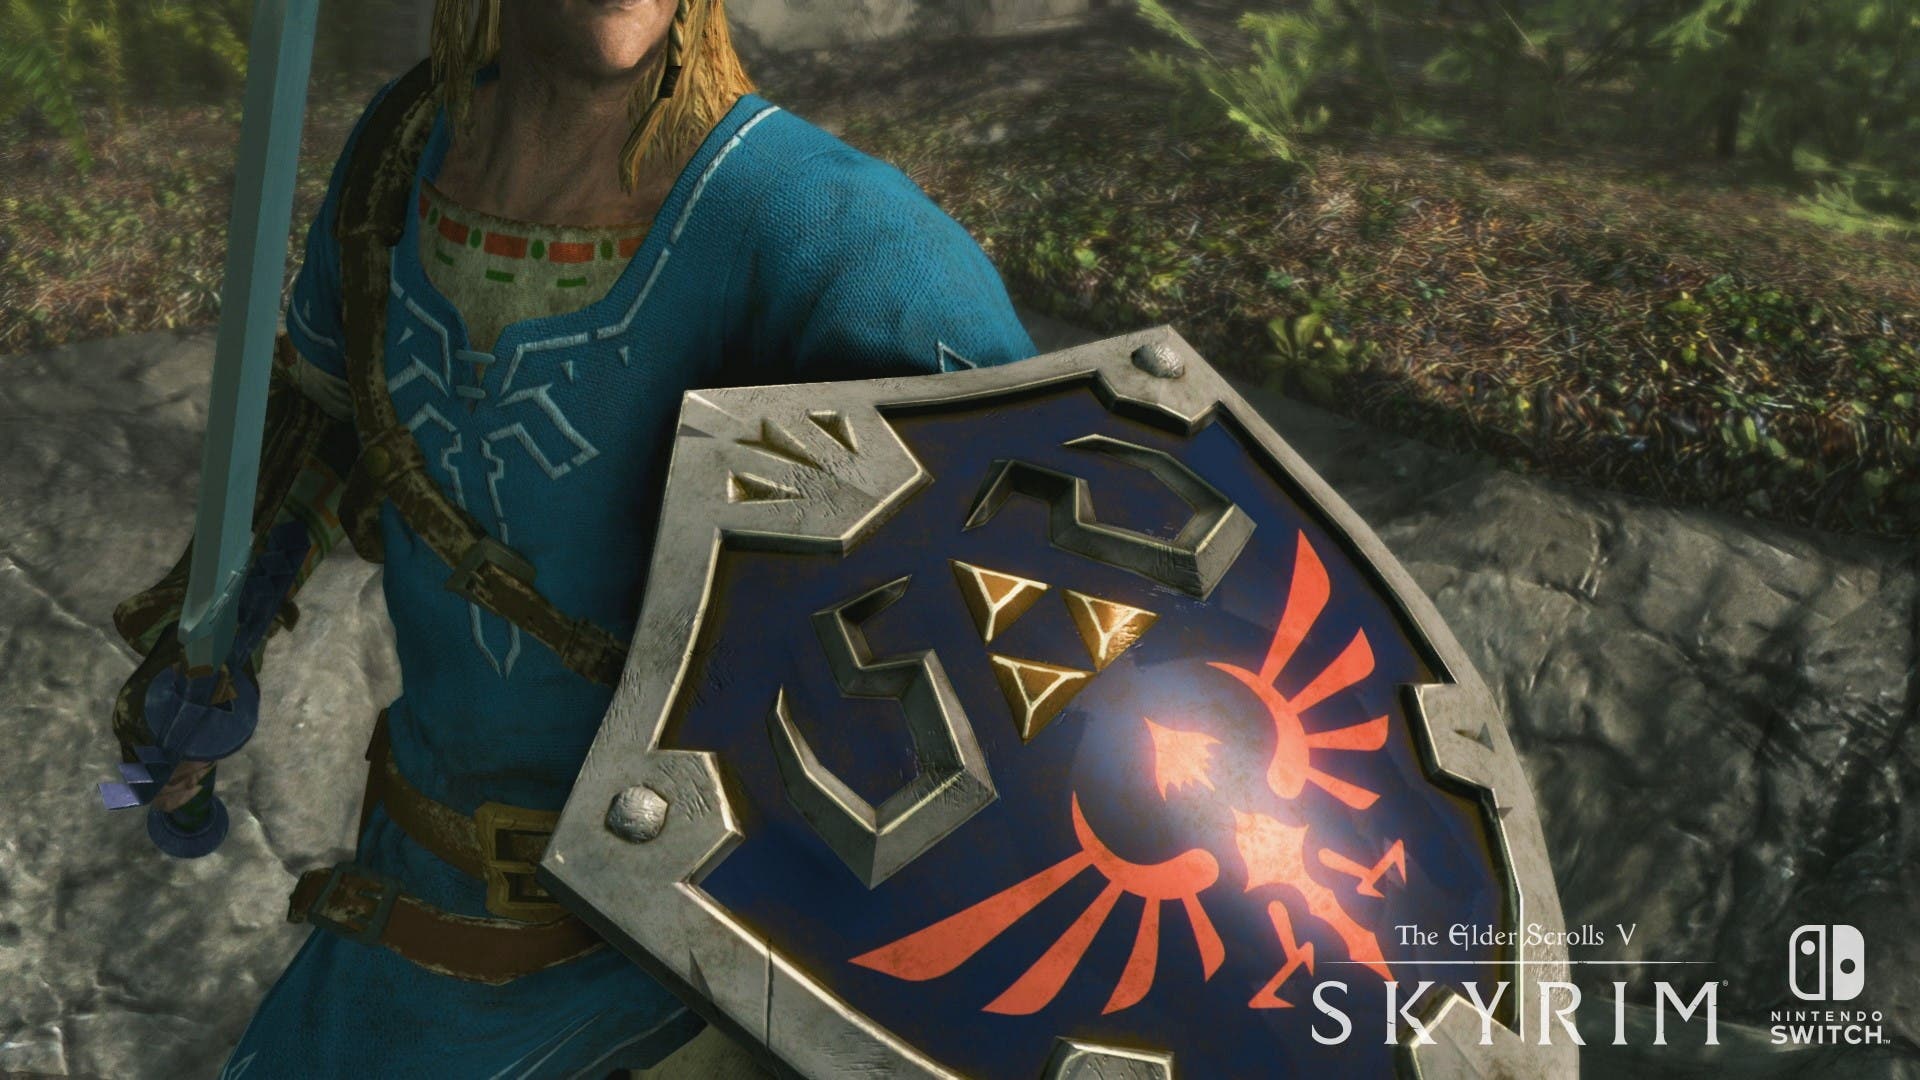 [Act.] Echad un vistazo a este gameplay off-screen en modo portátil de Skyrim con el equipo de Zelda